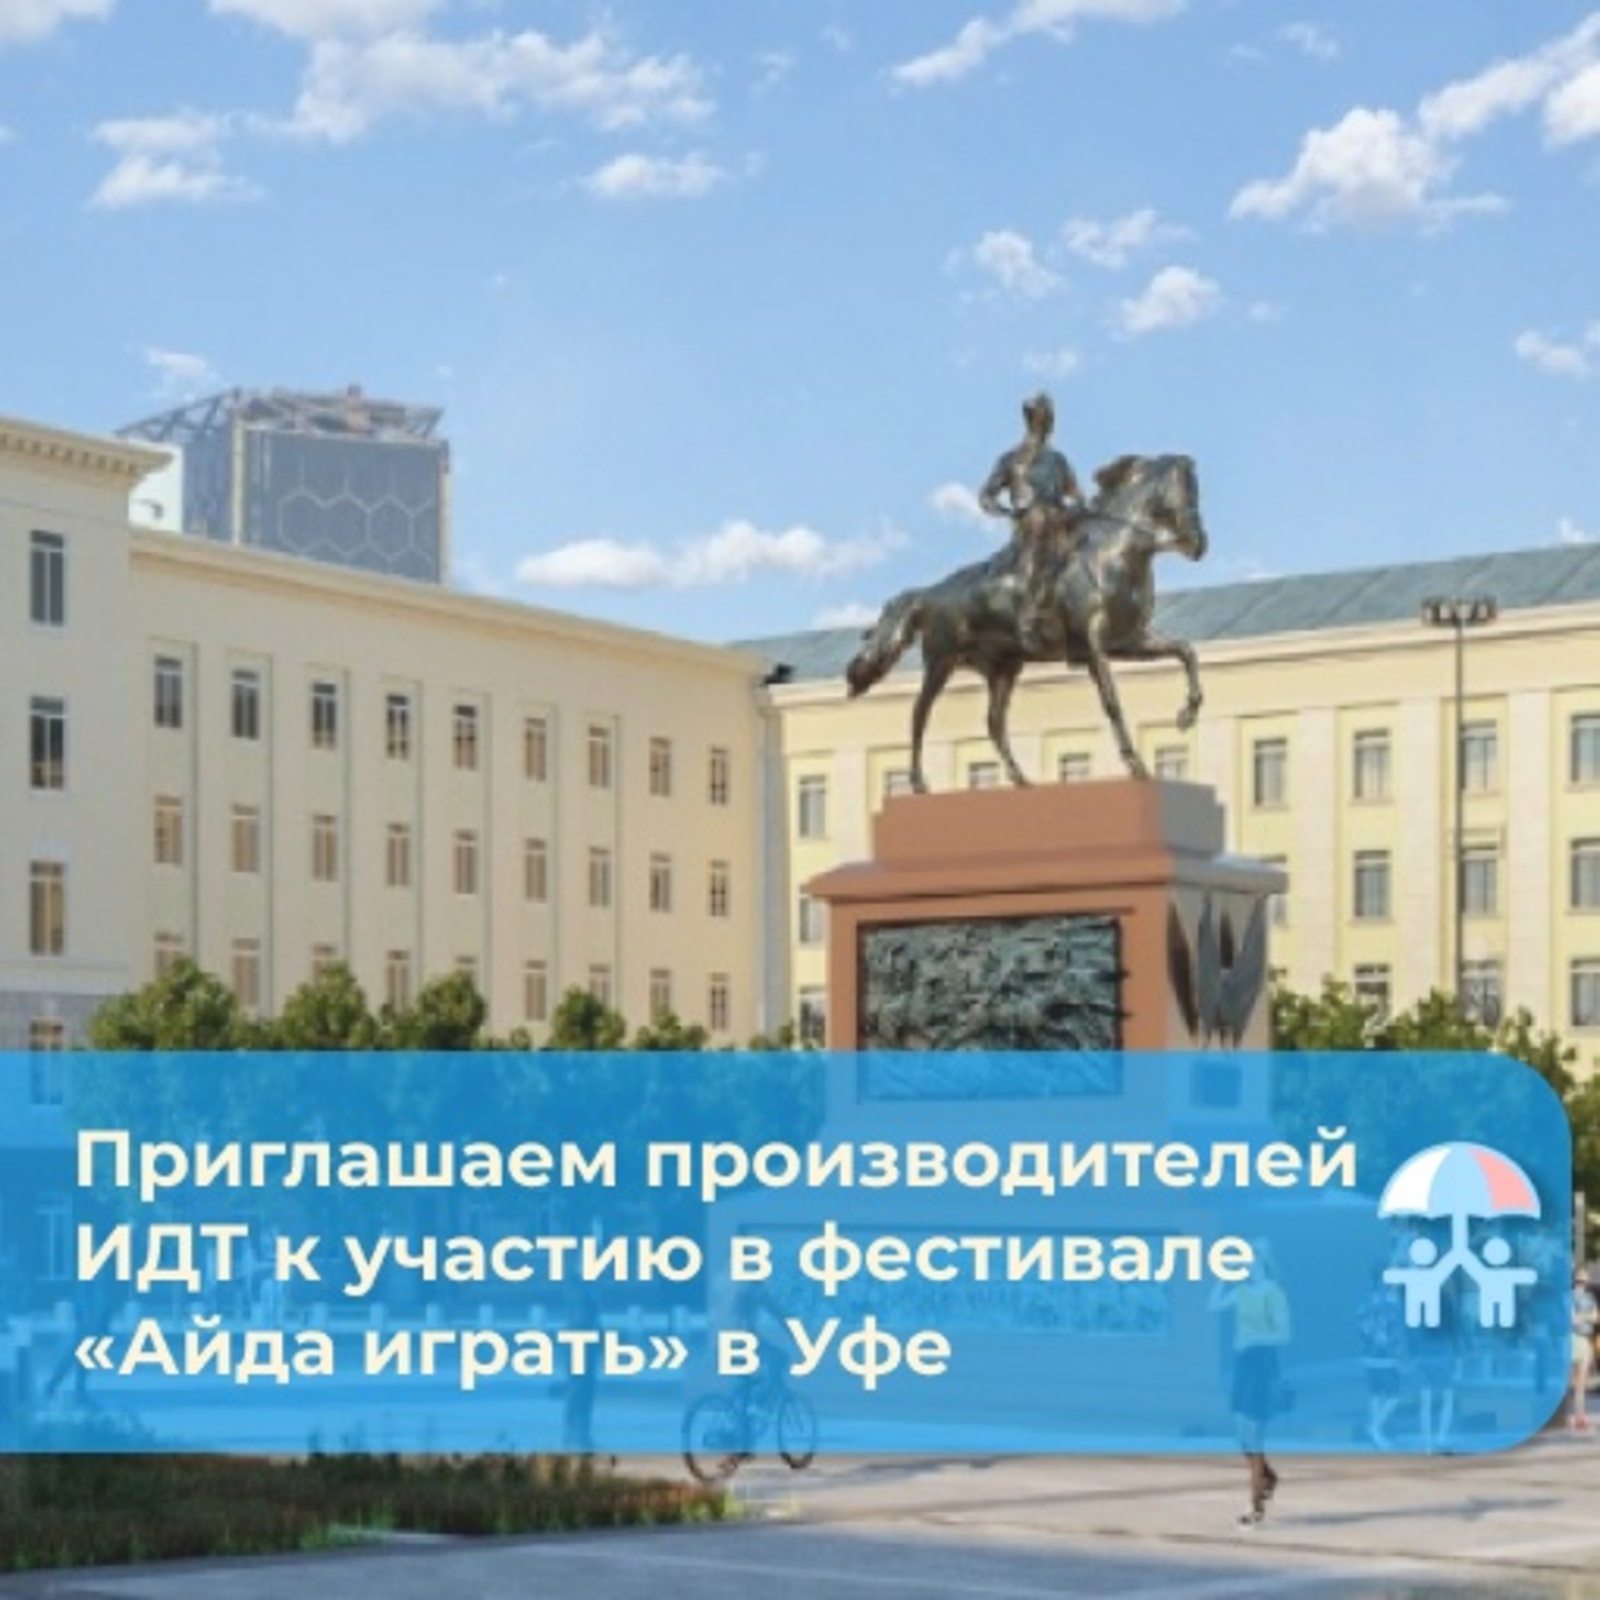 Фестиваль «Айда играть» пройдет в Уфе с 14 по 17 сентября на Советской площади